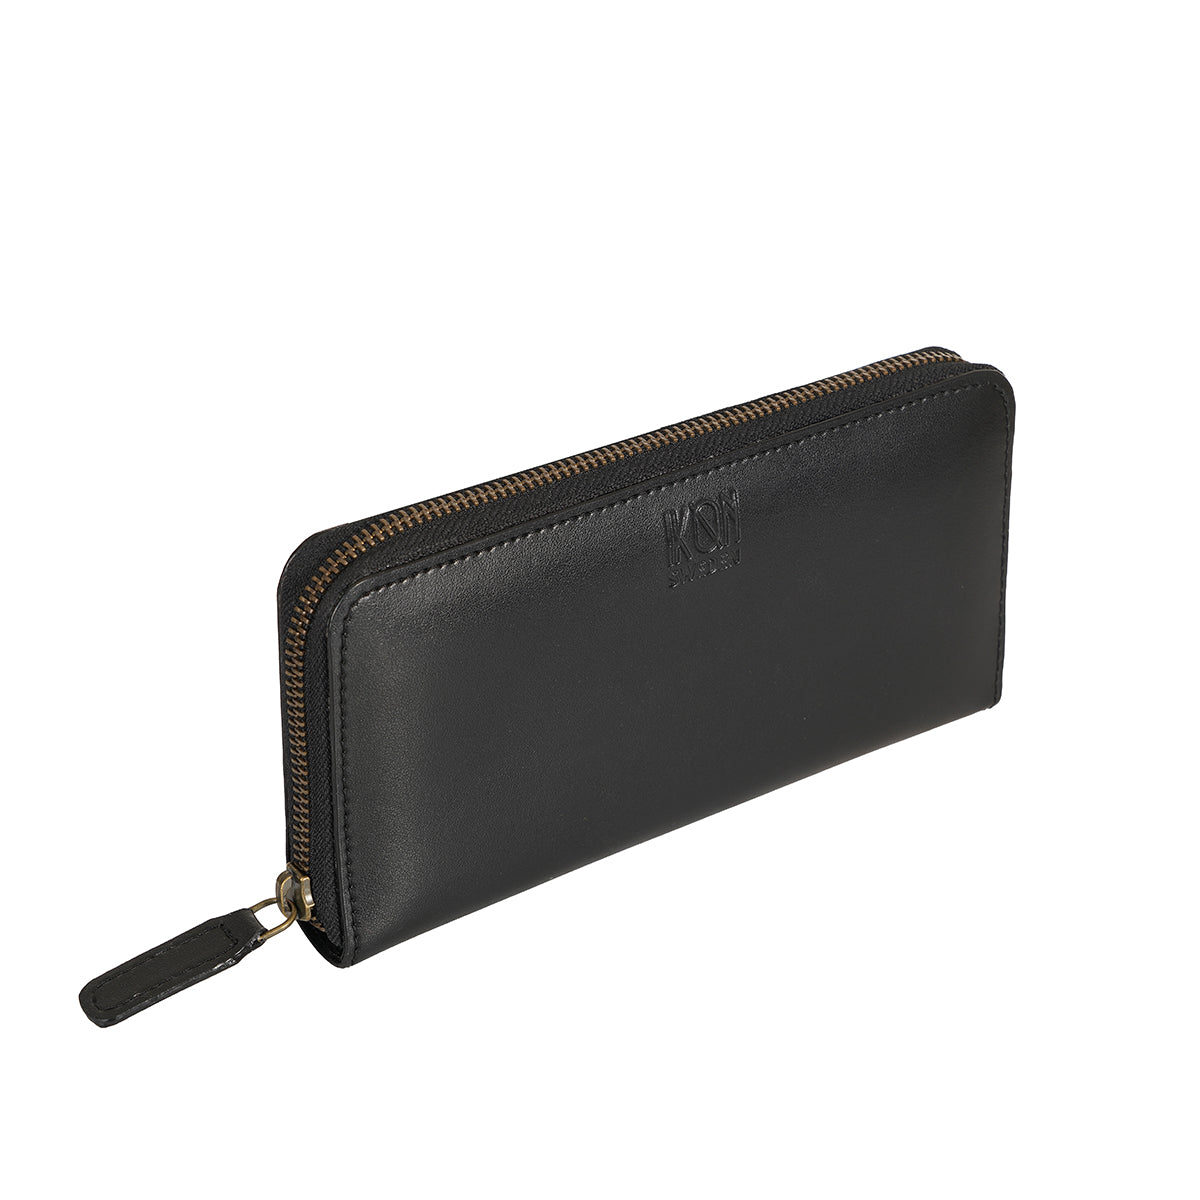 Black Long zip leather wallet for women